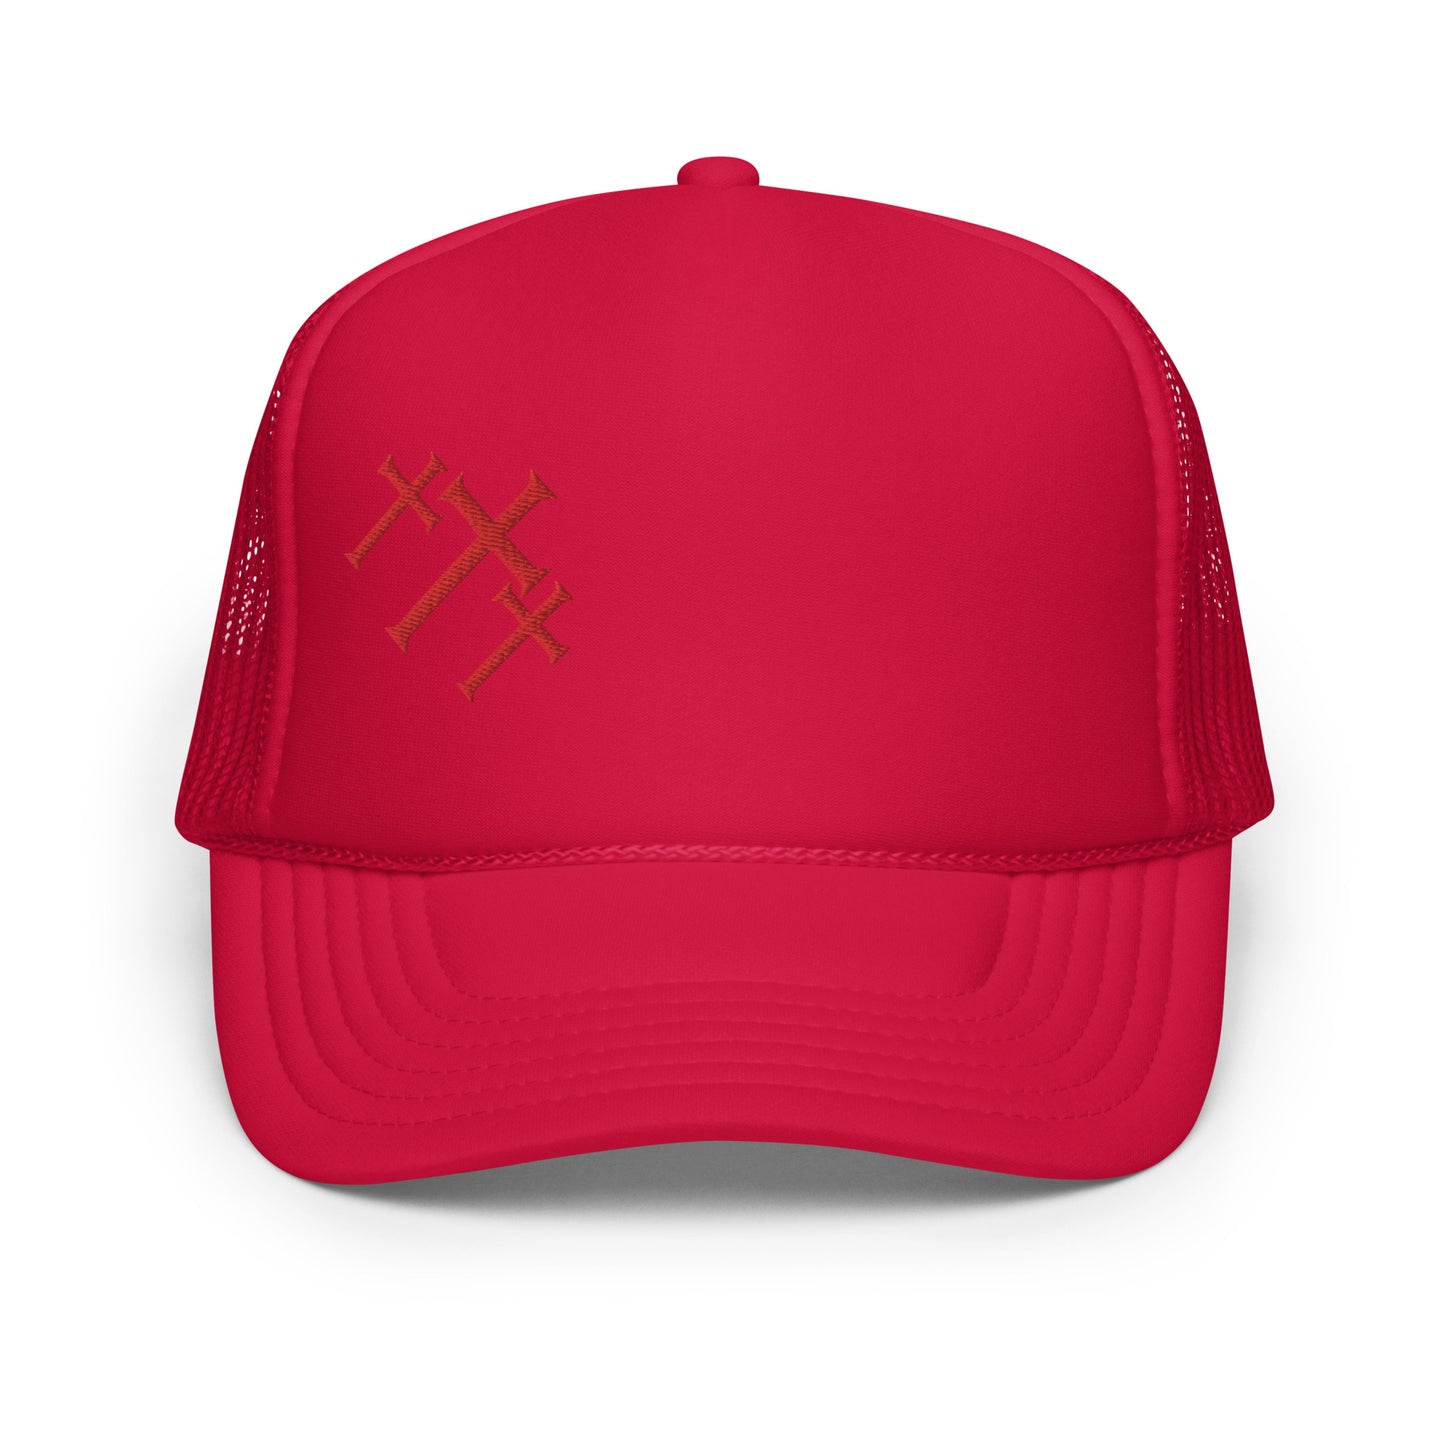 Trinity Crosses- Foam trucker hat